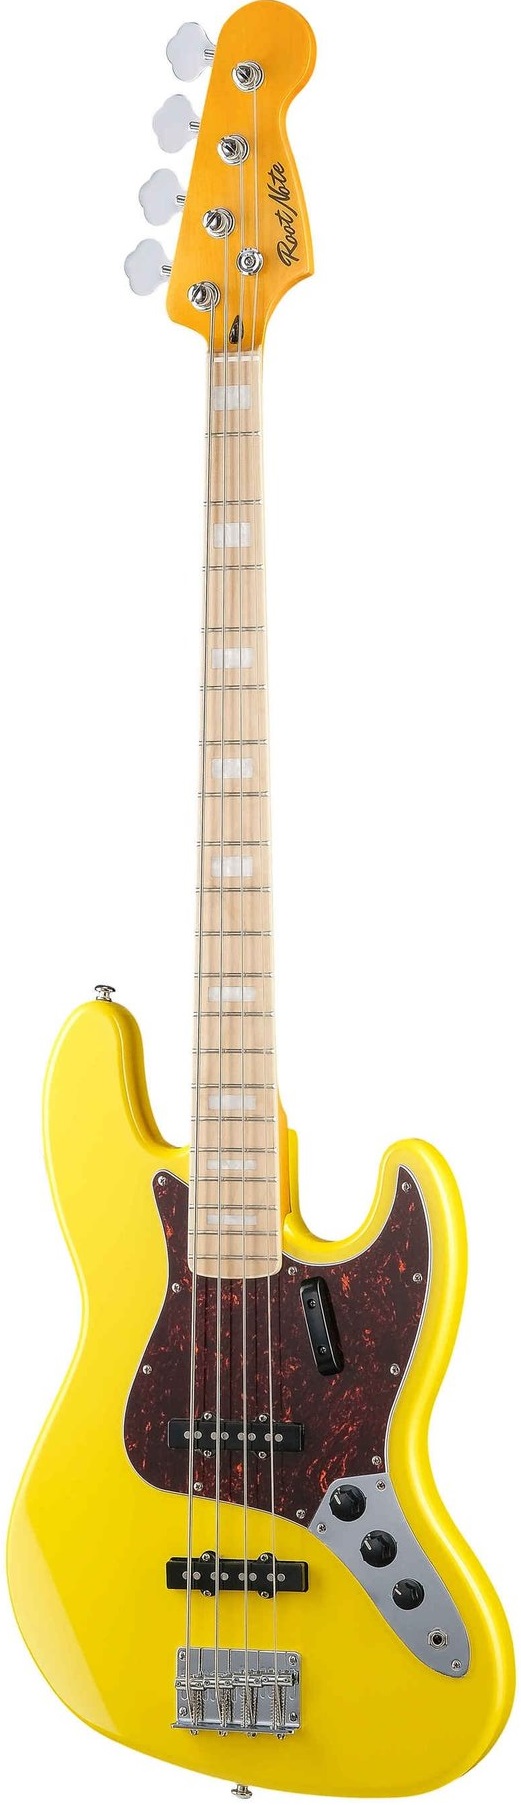 Бас-гитары Root Note JB001-VWH электрогитара бас струна скруббер гриф средство для чистки басов аксессуары для гитары уход чистящий инструмент